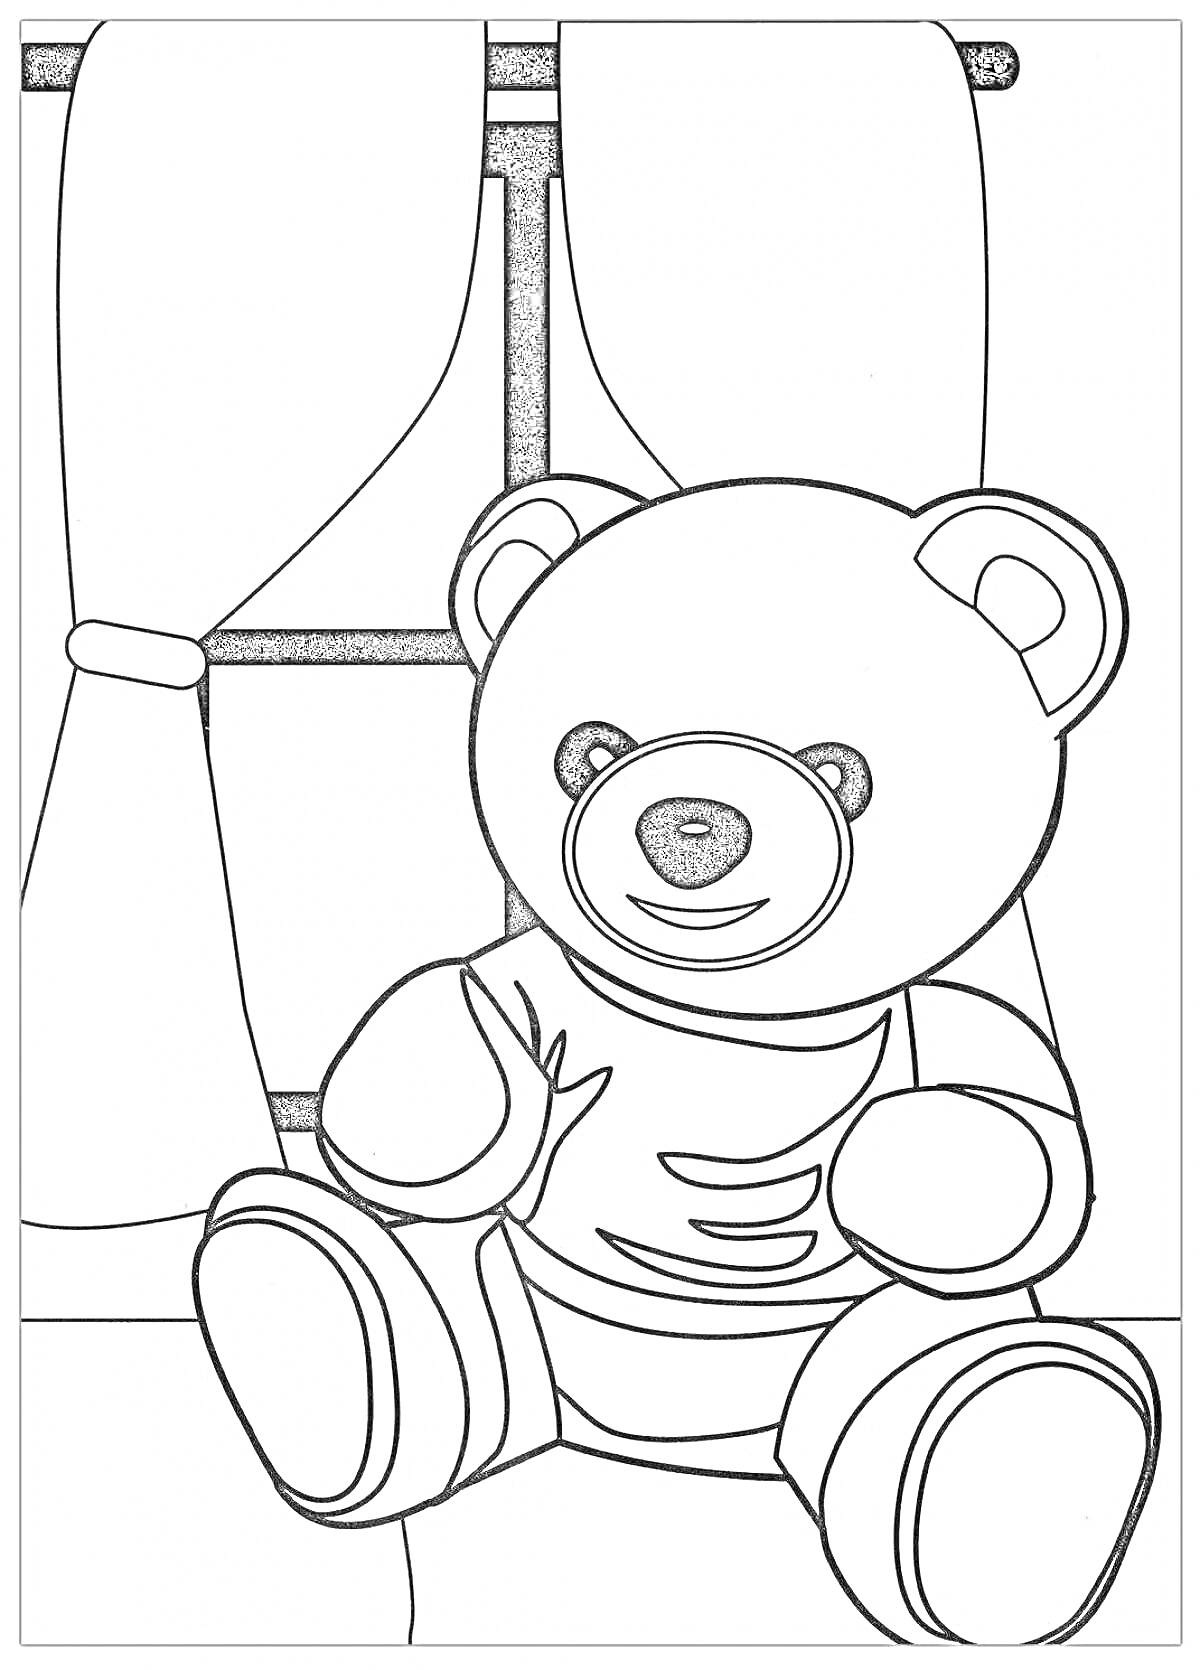 Раскраска Тедди-медвежонок на фоне окна с занавесками